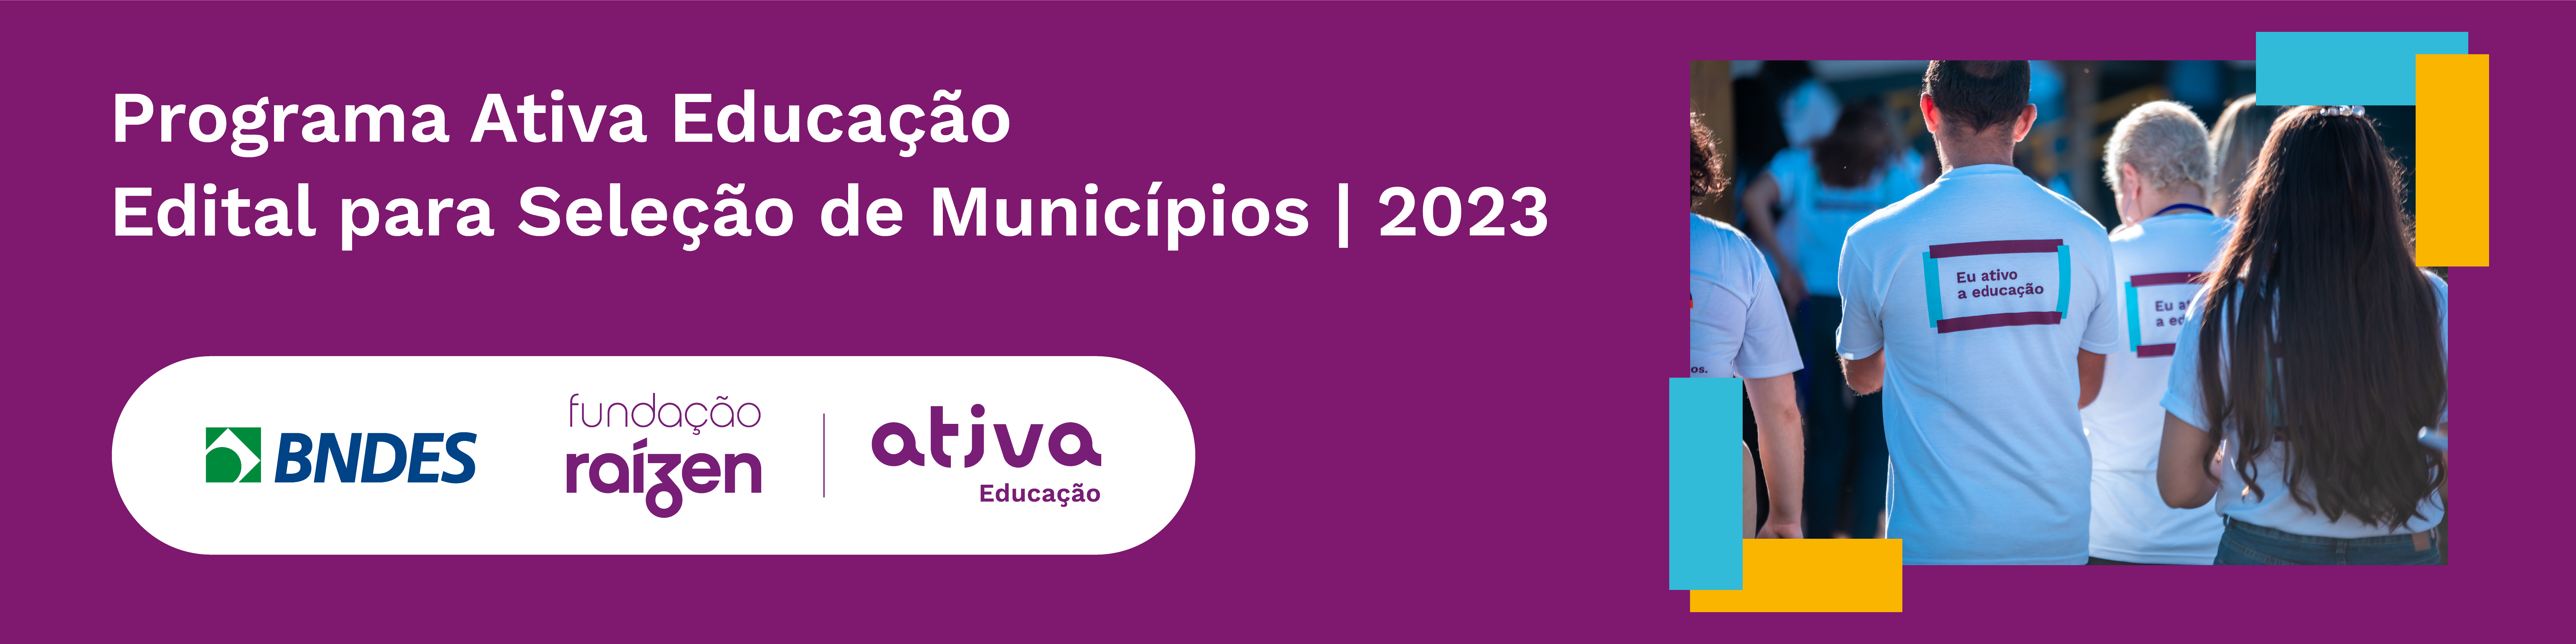 Banner Edital Ativa Educação - Seleção de Municípios 2023 (Ciclo I)